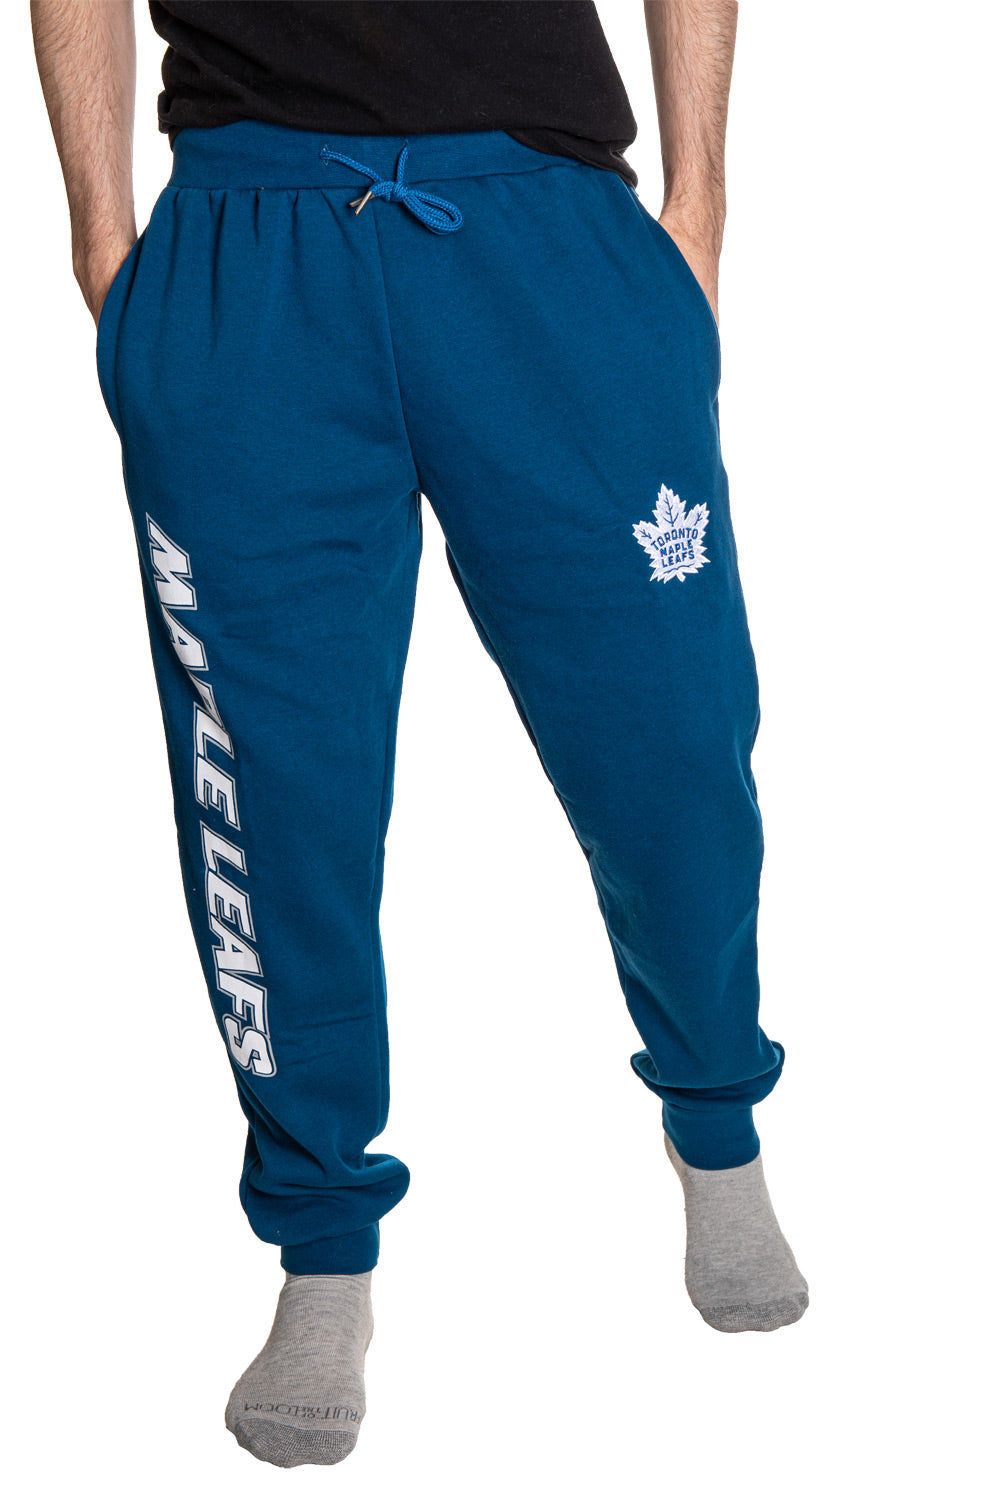 Toronto Maple Leafs Cuffed Fleece Sweatpants